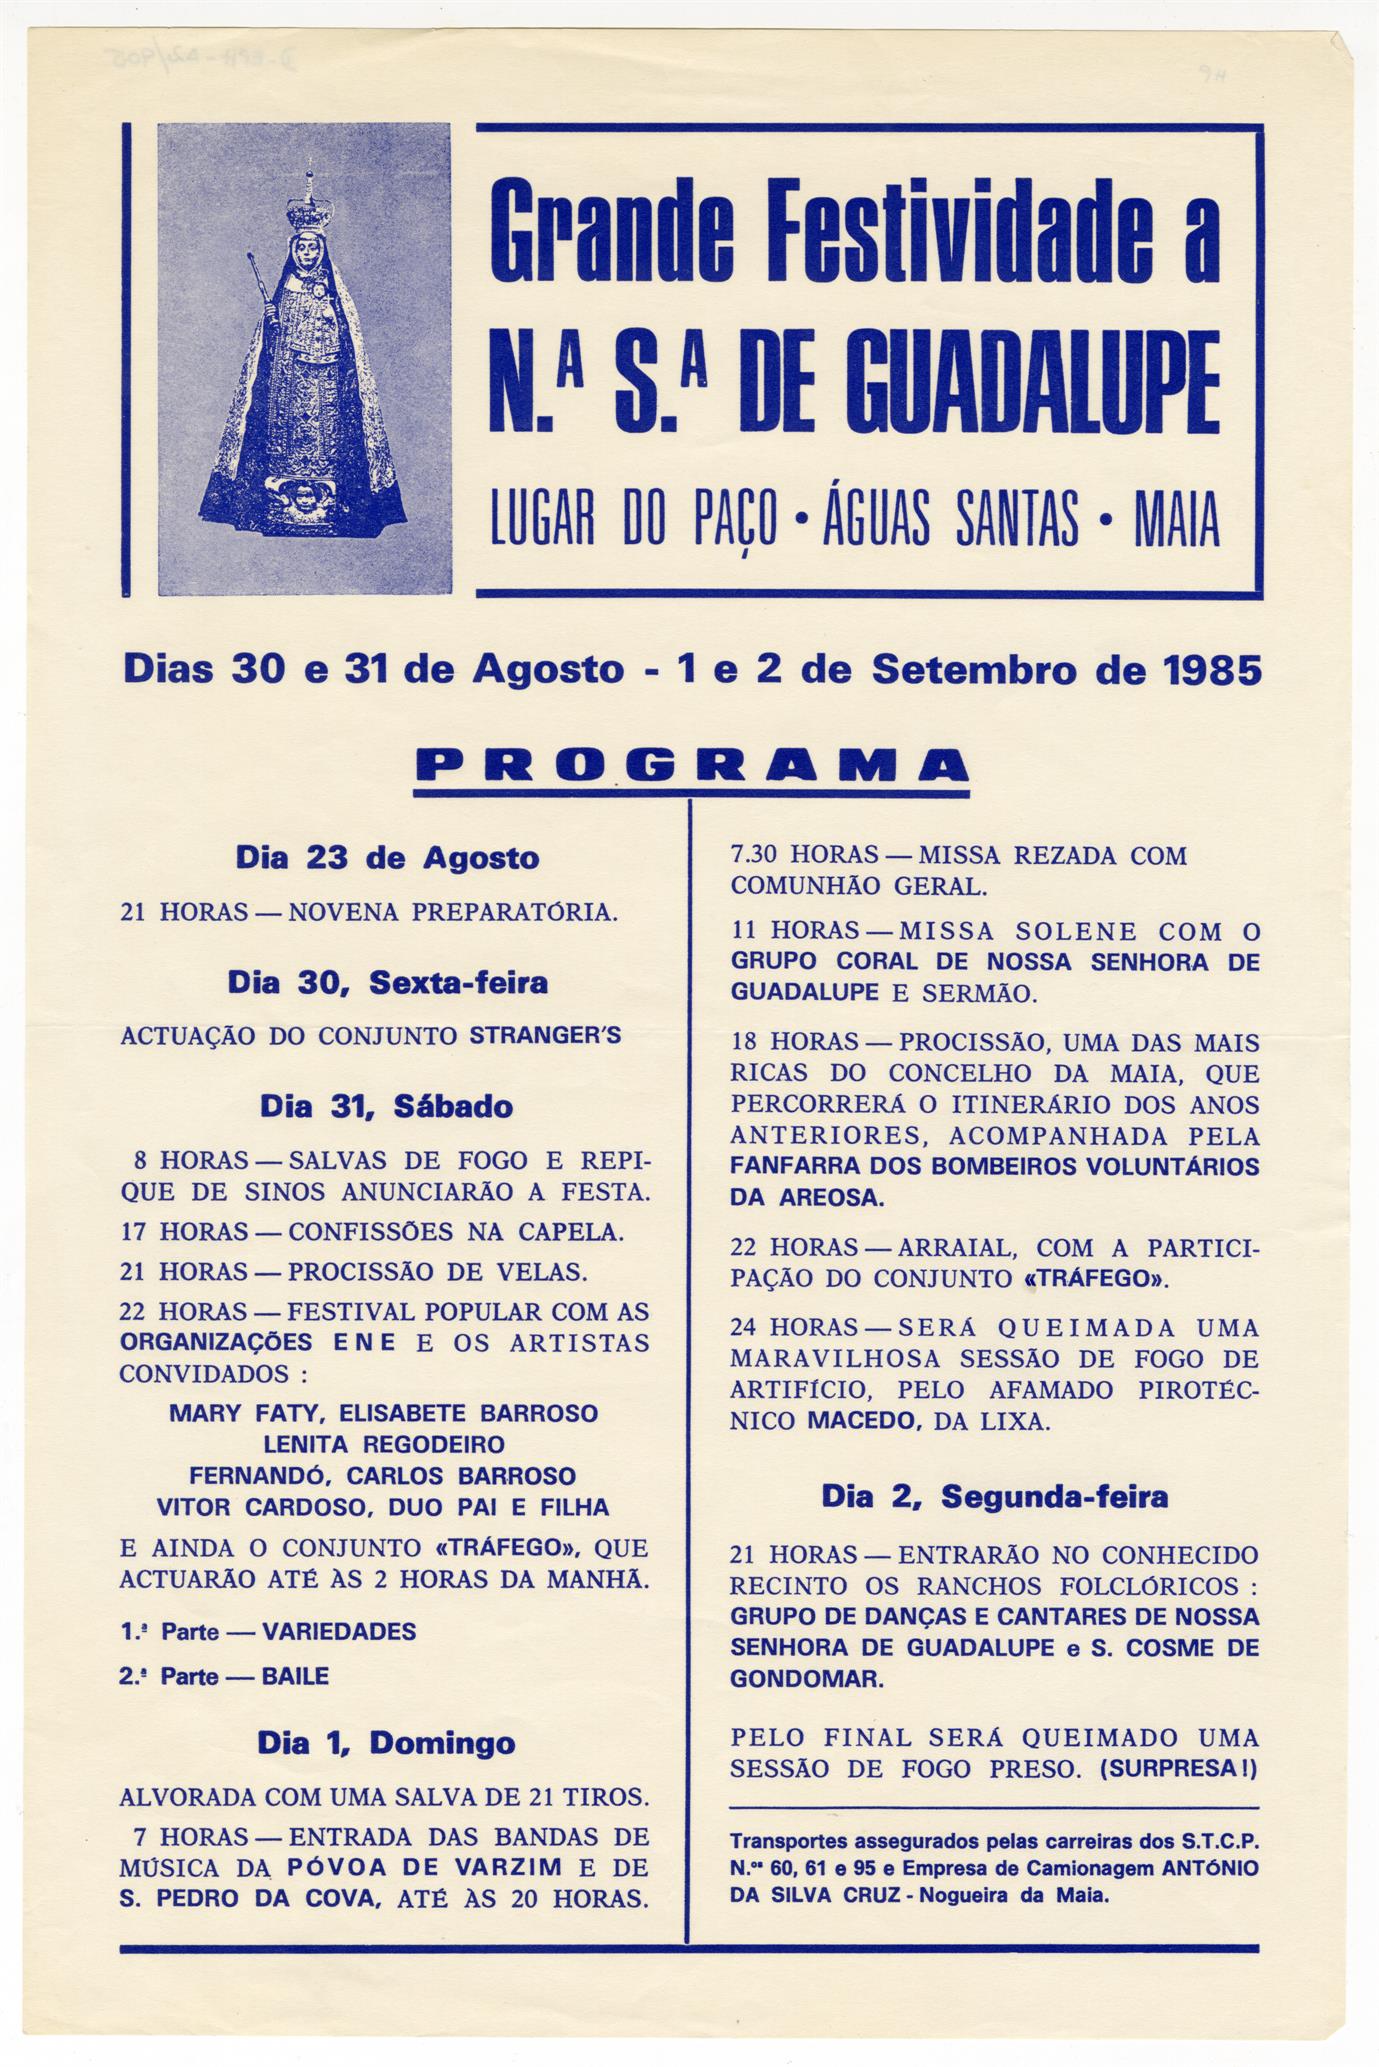 Grande festividade a Nossa Senhora de Guadalupe, Lugar do Paço, Águas Santas, Maia